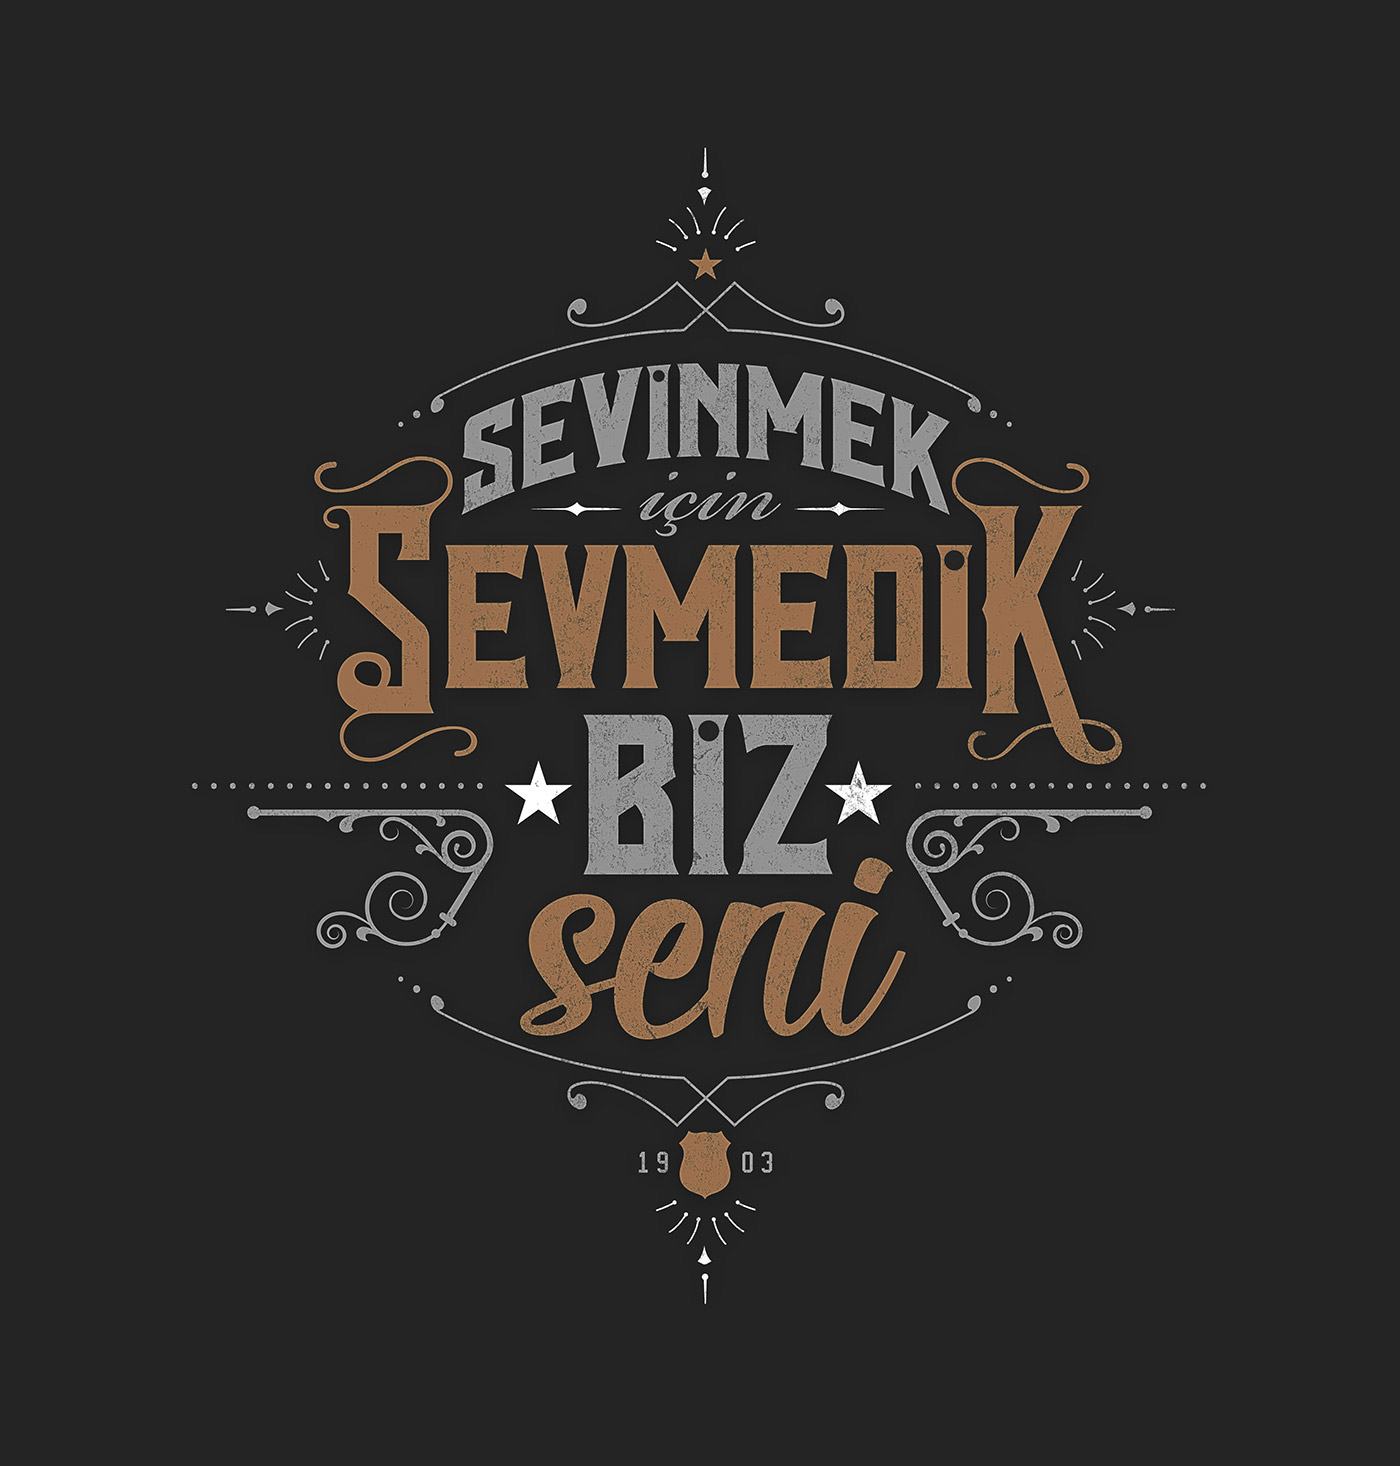 tipografi Beşiktaş tezahürat Chant quote vintage Turkey türkiye istanbul BJK çarşı